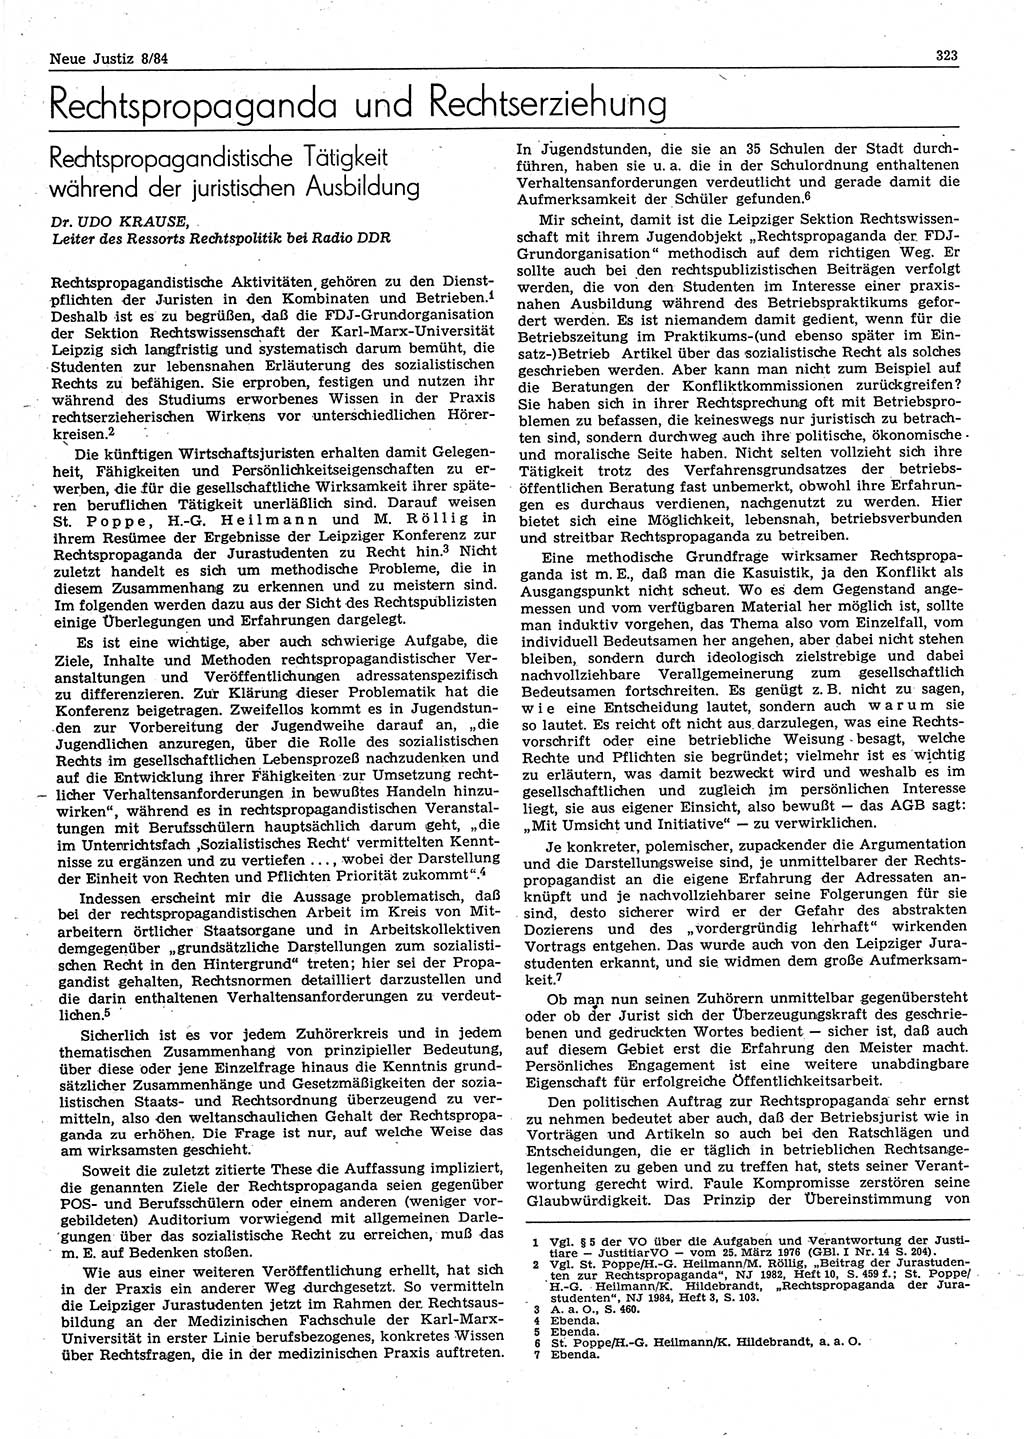 Neue Justiz (NJ), Zeitschrift für sozialistisches Recht und Gesetzlichkeit [Deutsche Demokratische Republik (DDR)], 38. Jahrgang 1984, Seite 323 (NJ DDR 1984, S. 323)